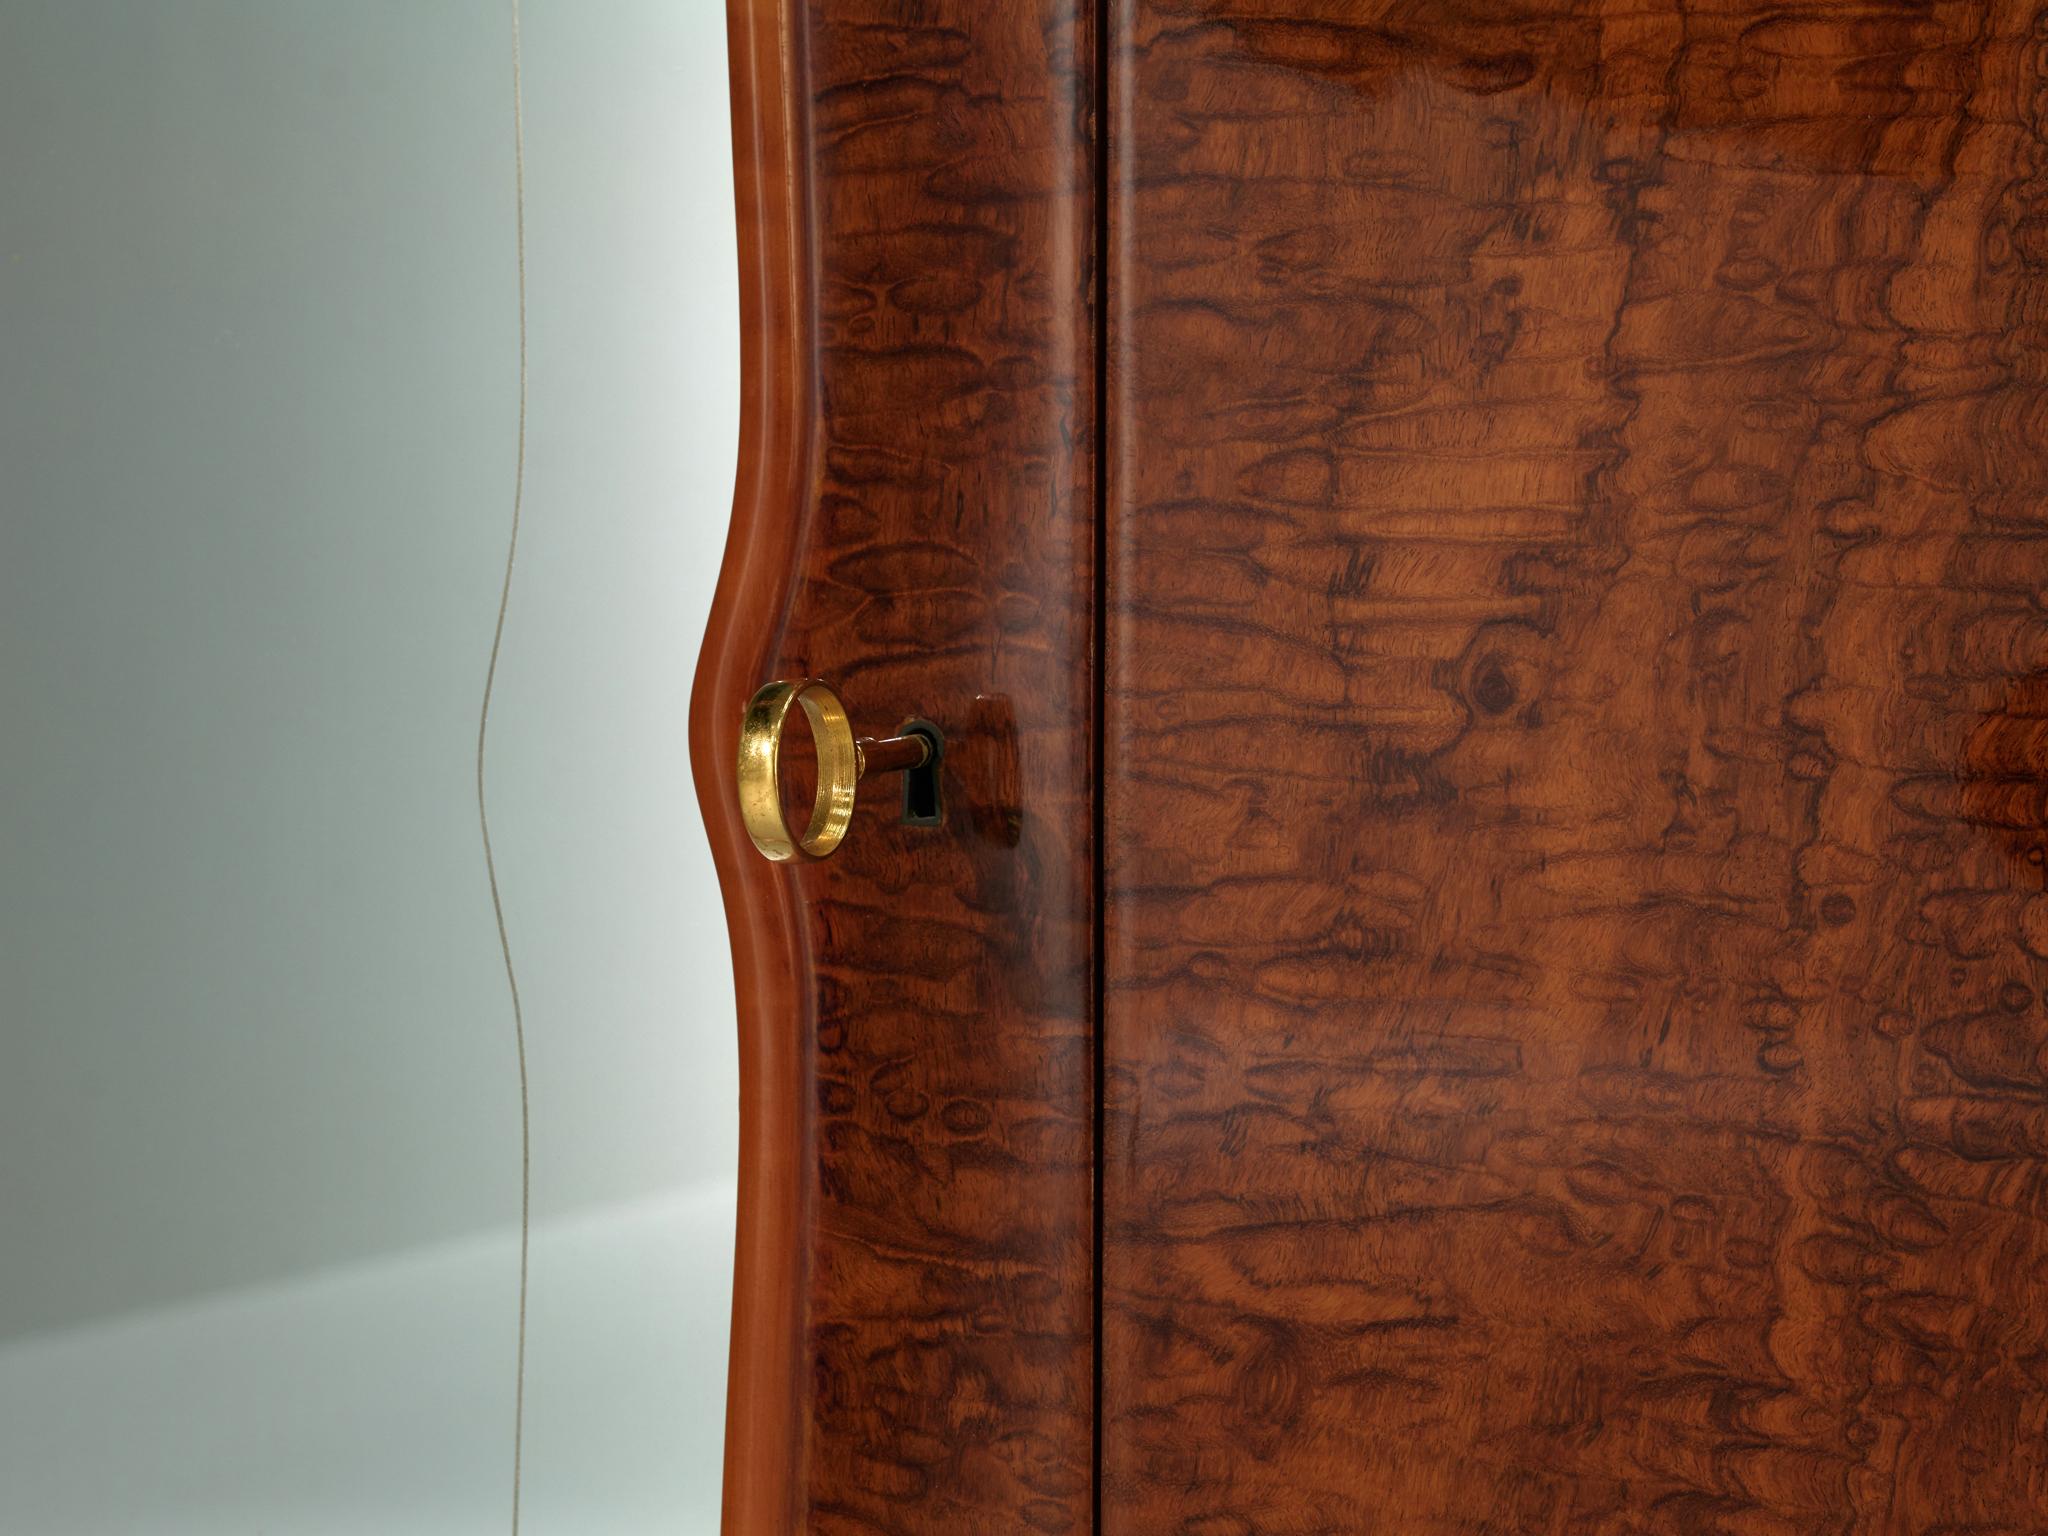 Exquisite Italian Wardrobe with Mirrored Doors in Walnut Burl